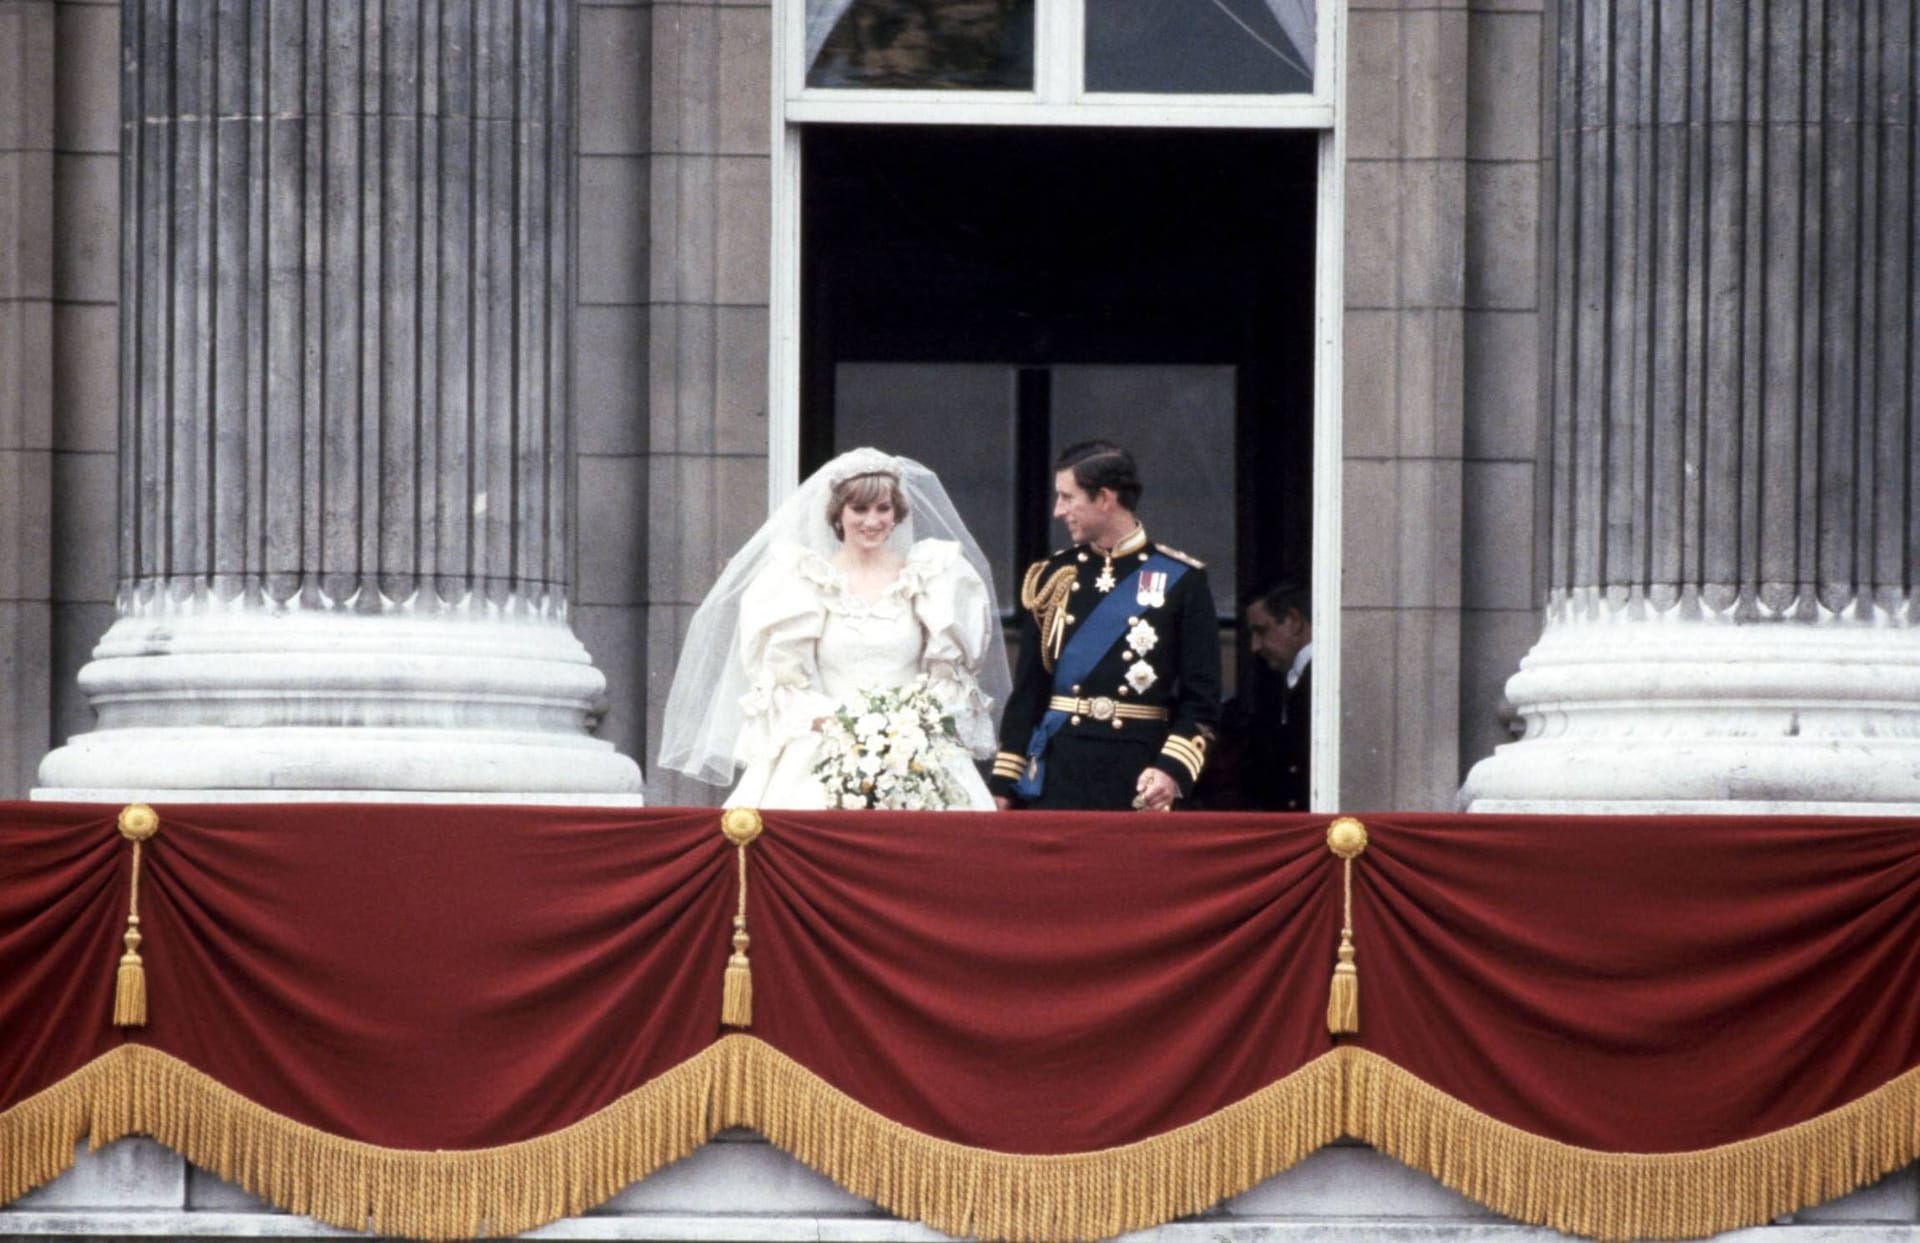 Am 29. Juli 1981 heiratet das Paar. Diana bekommt den Titel Princess of Wales. 750 Millionen Menschen weltweit verfolgen die Zeremonie im Radio und Fernsehen.